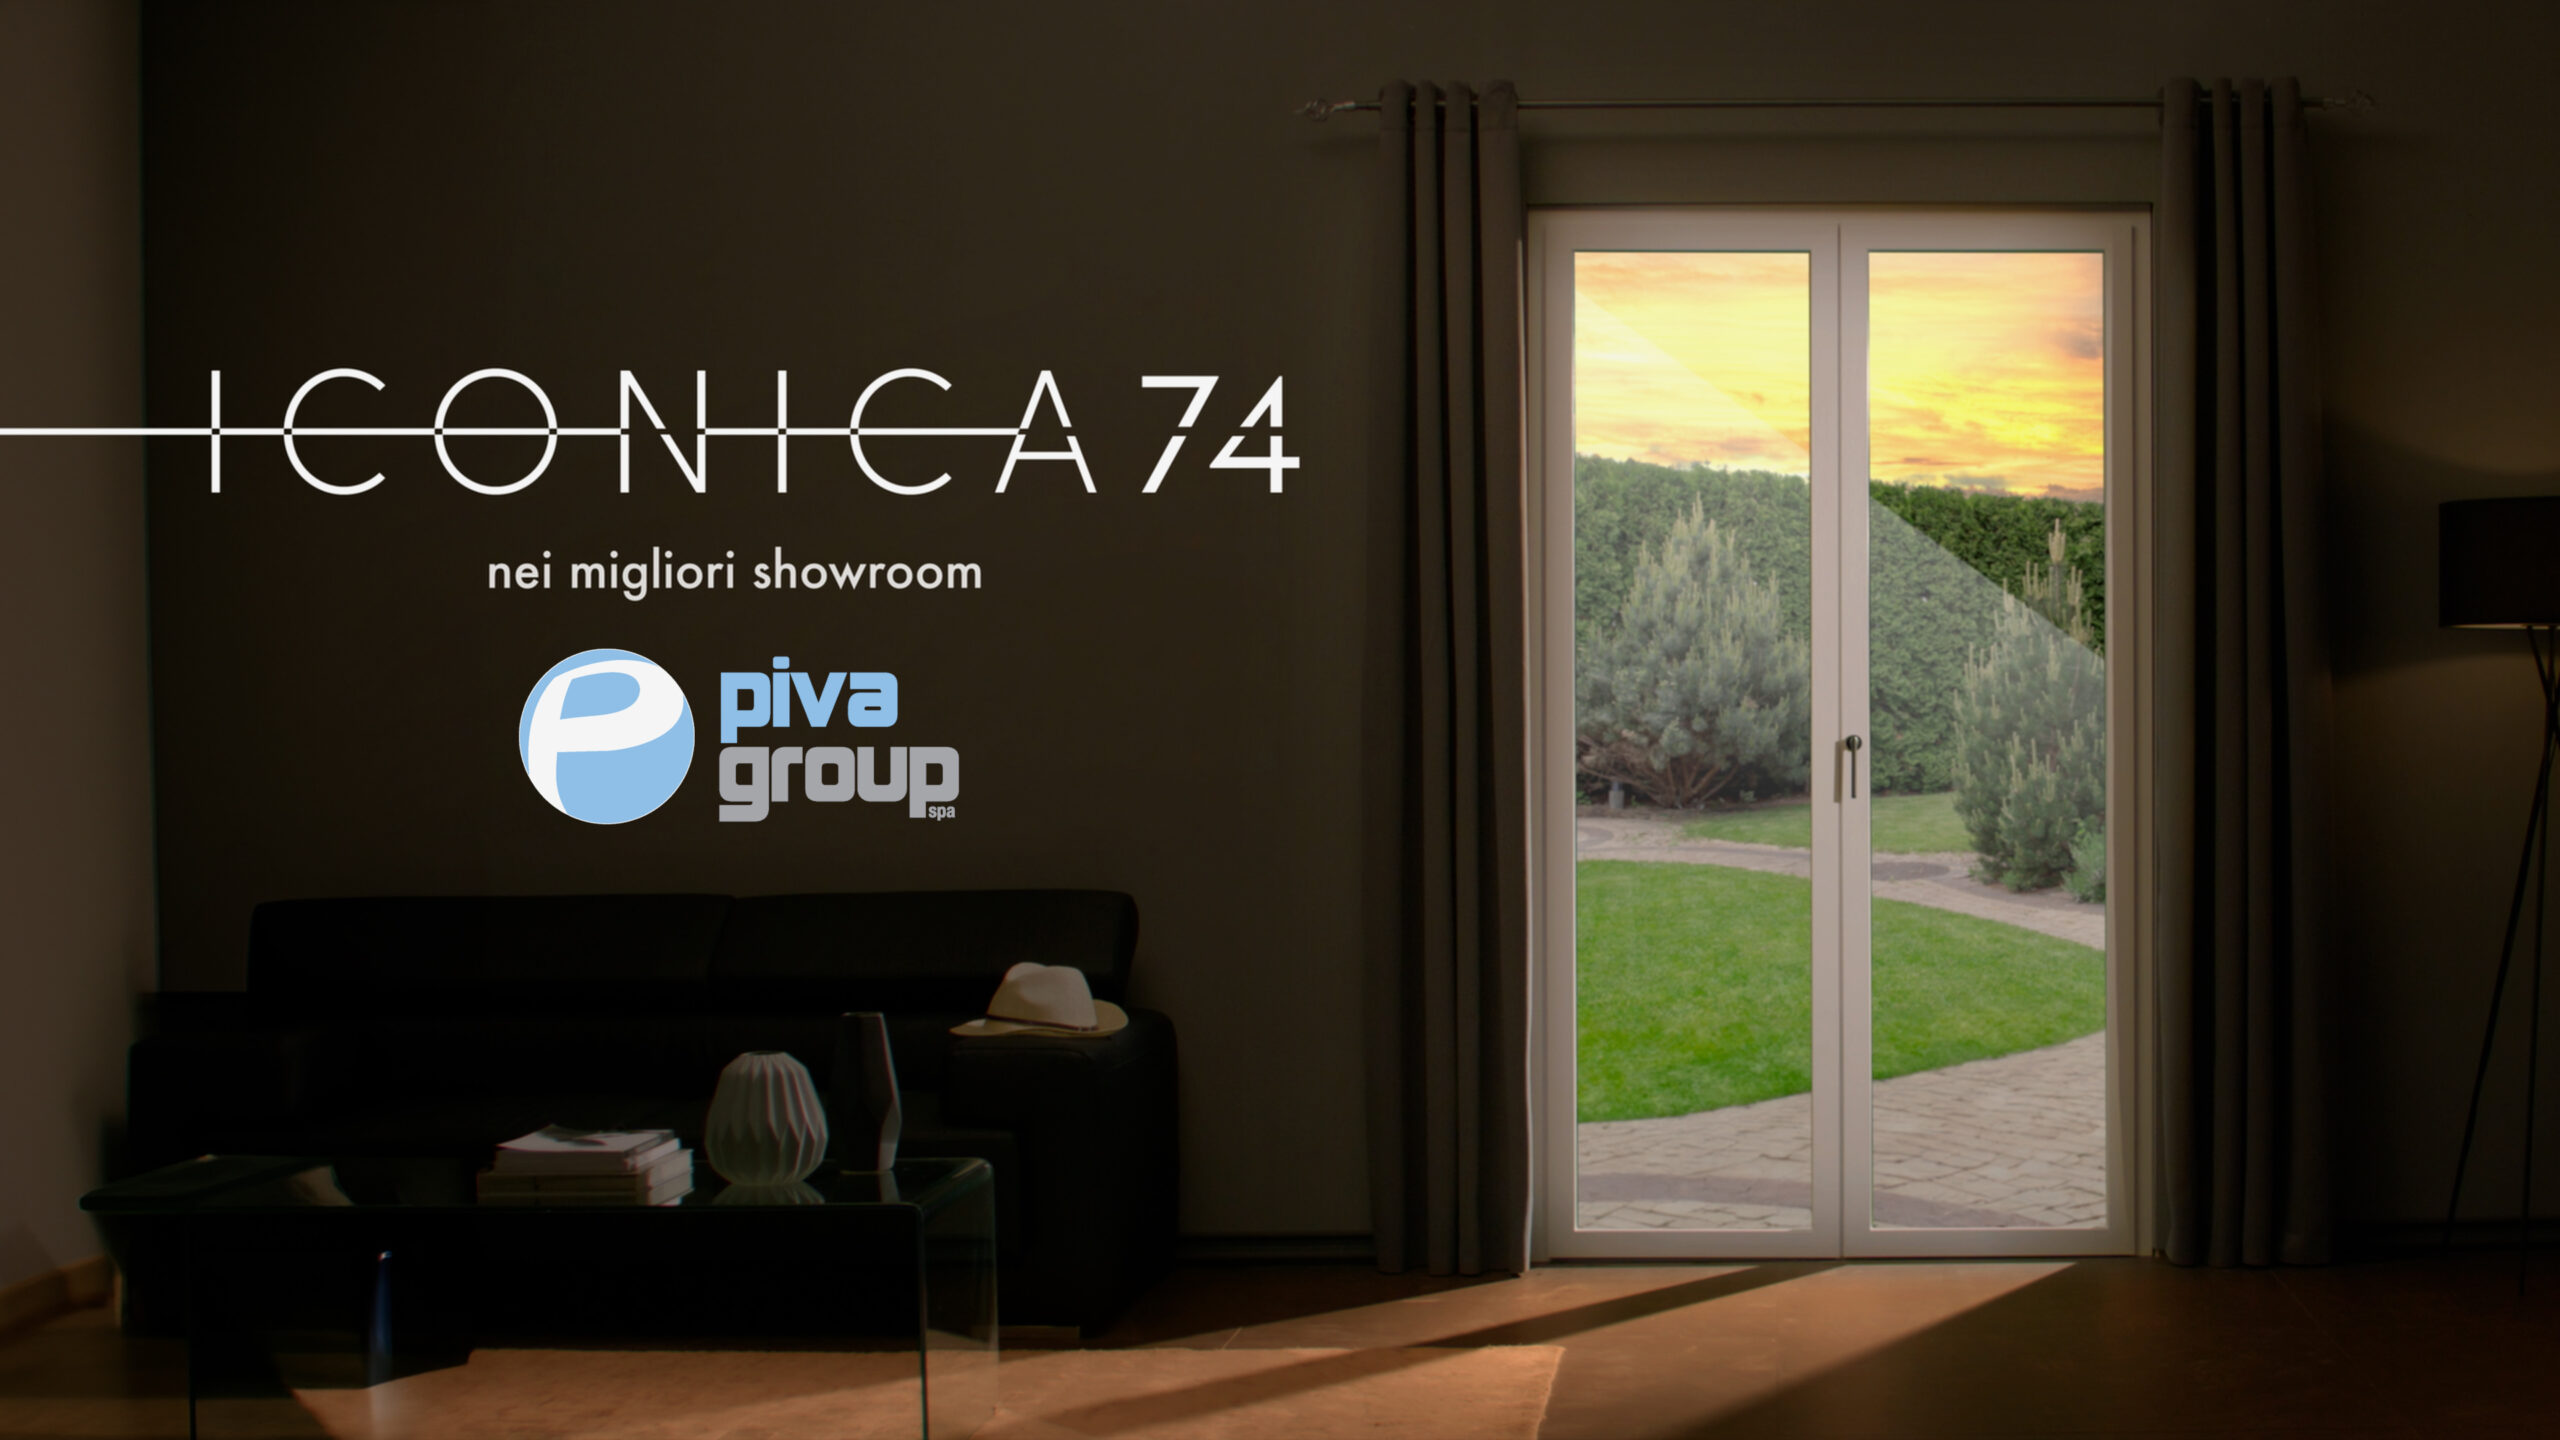 Scopri di più sull'articolo Parte la campagna TV “Iconica74”, il nuovo spot realizzato per Piva Group